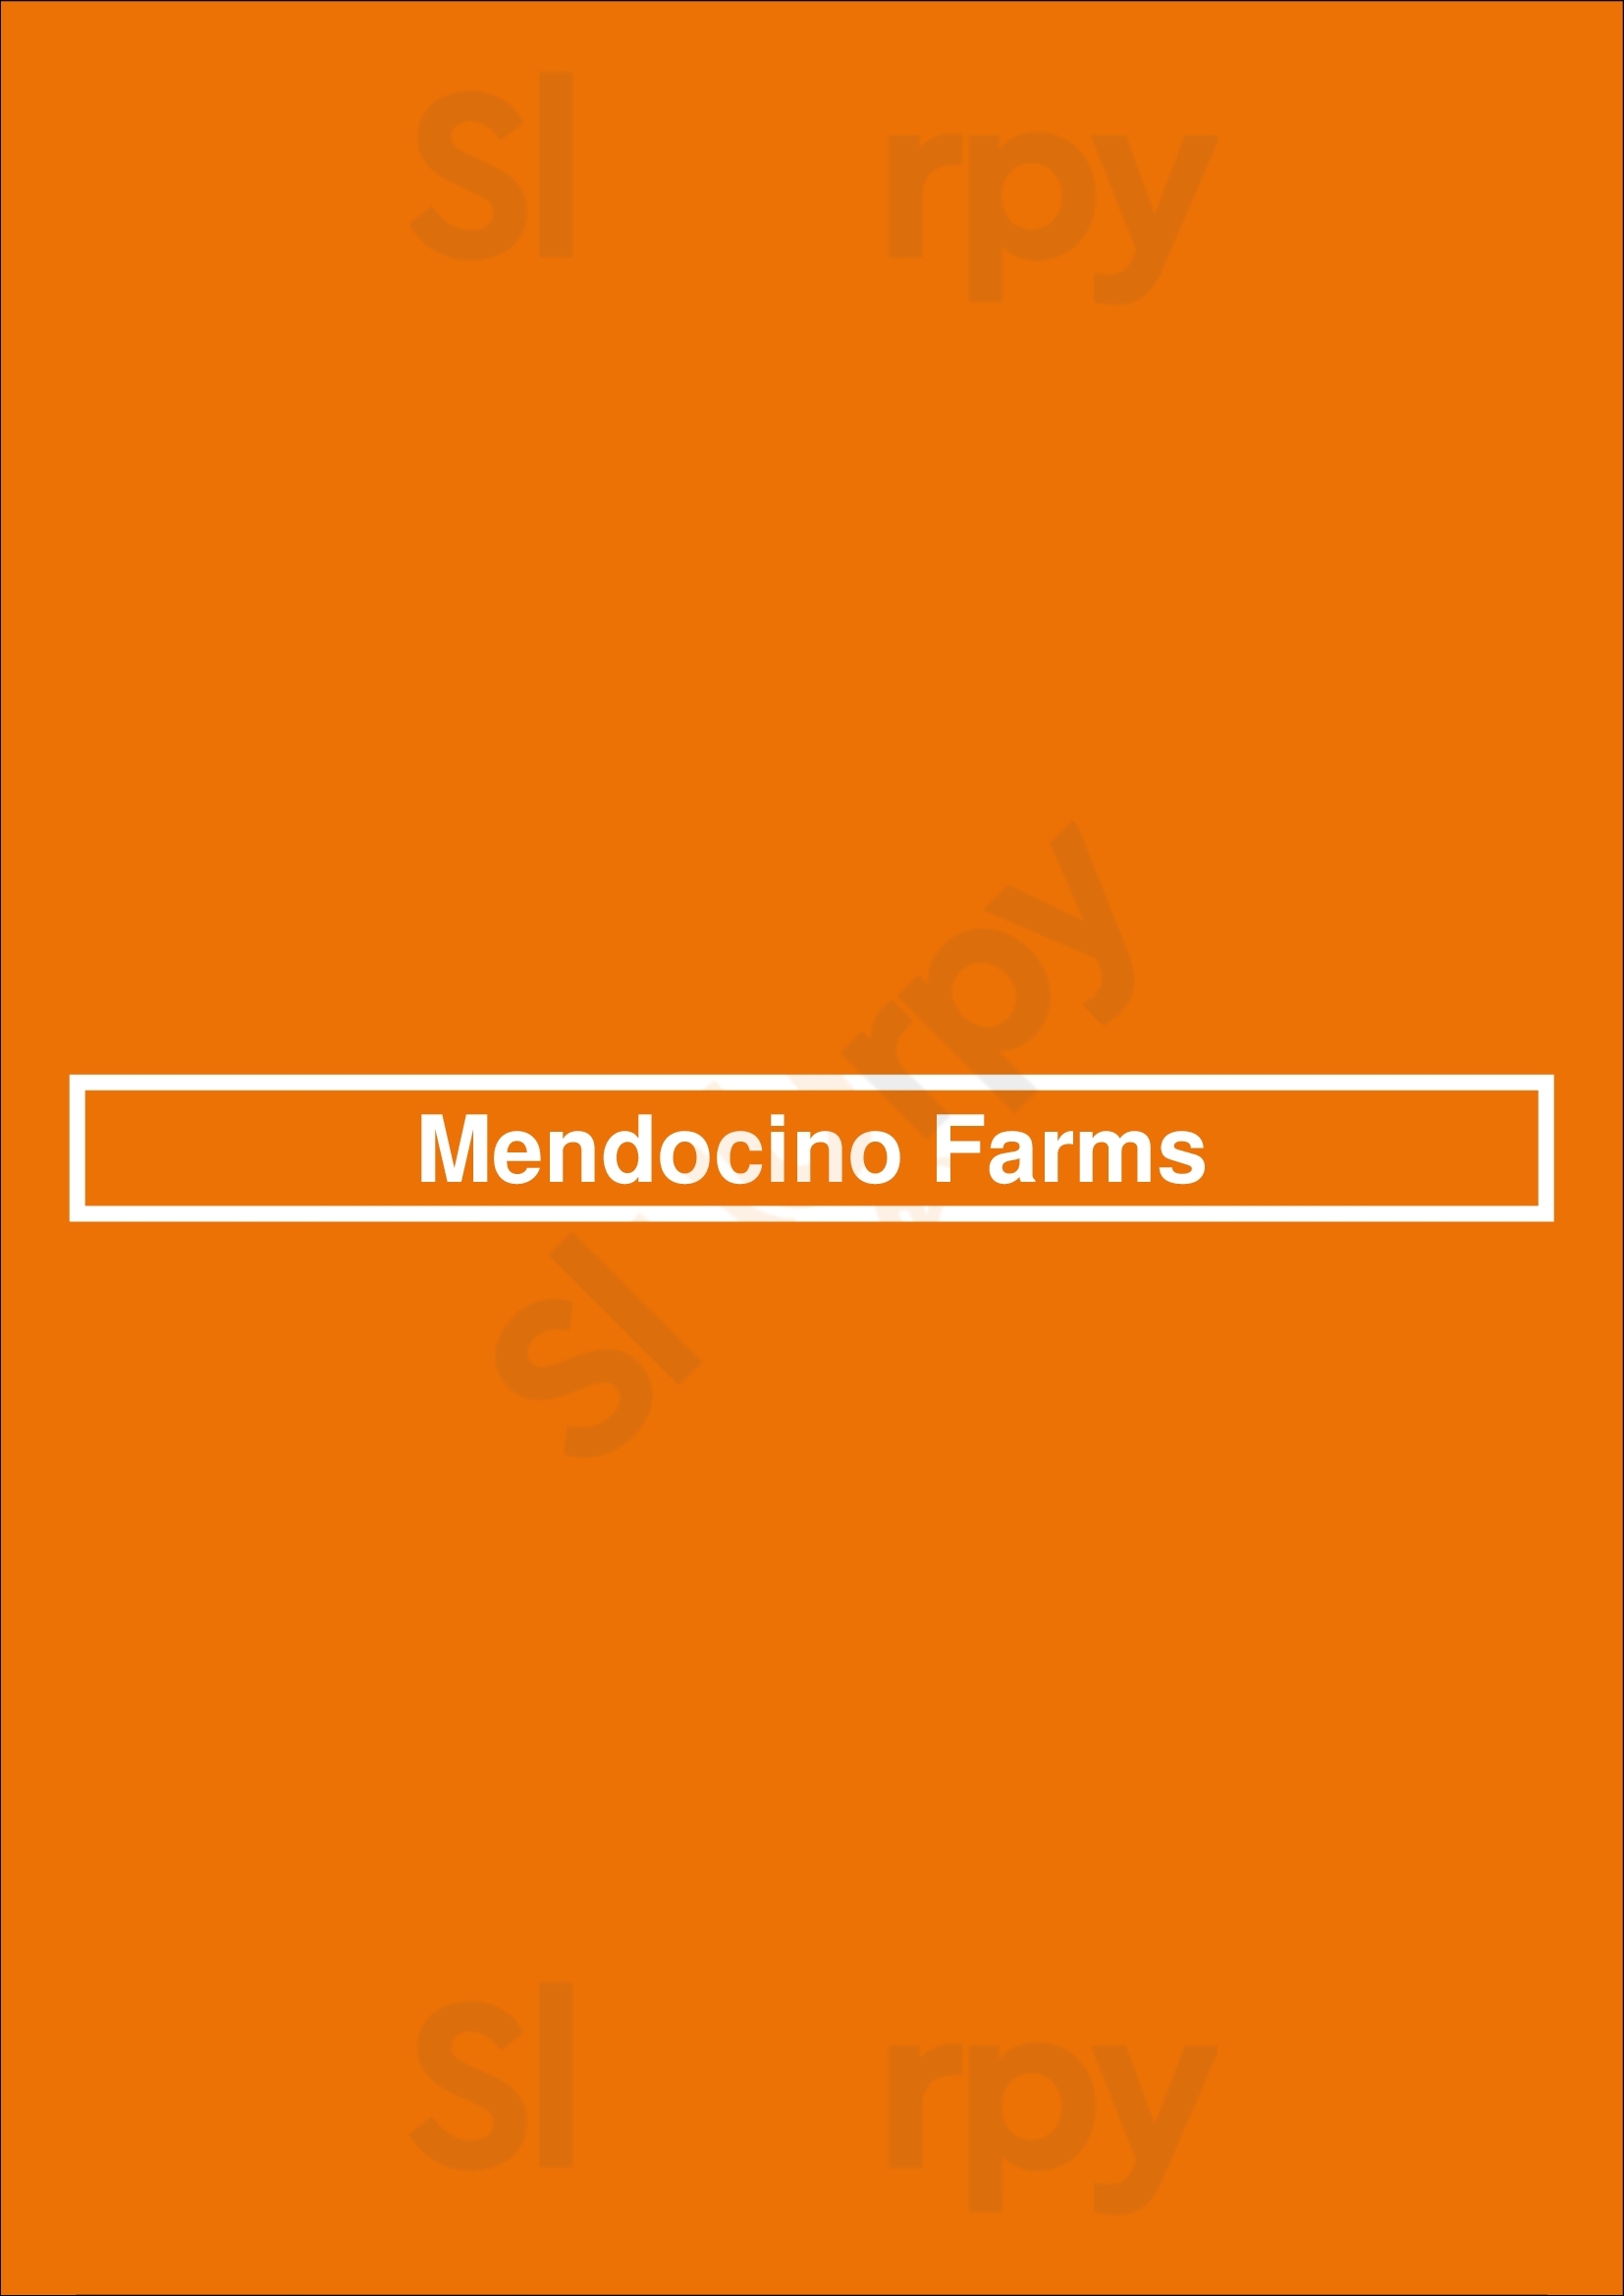 Mendocino Farms Los Angeles Menu - 1